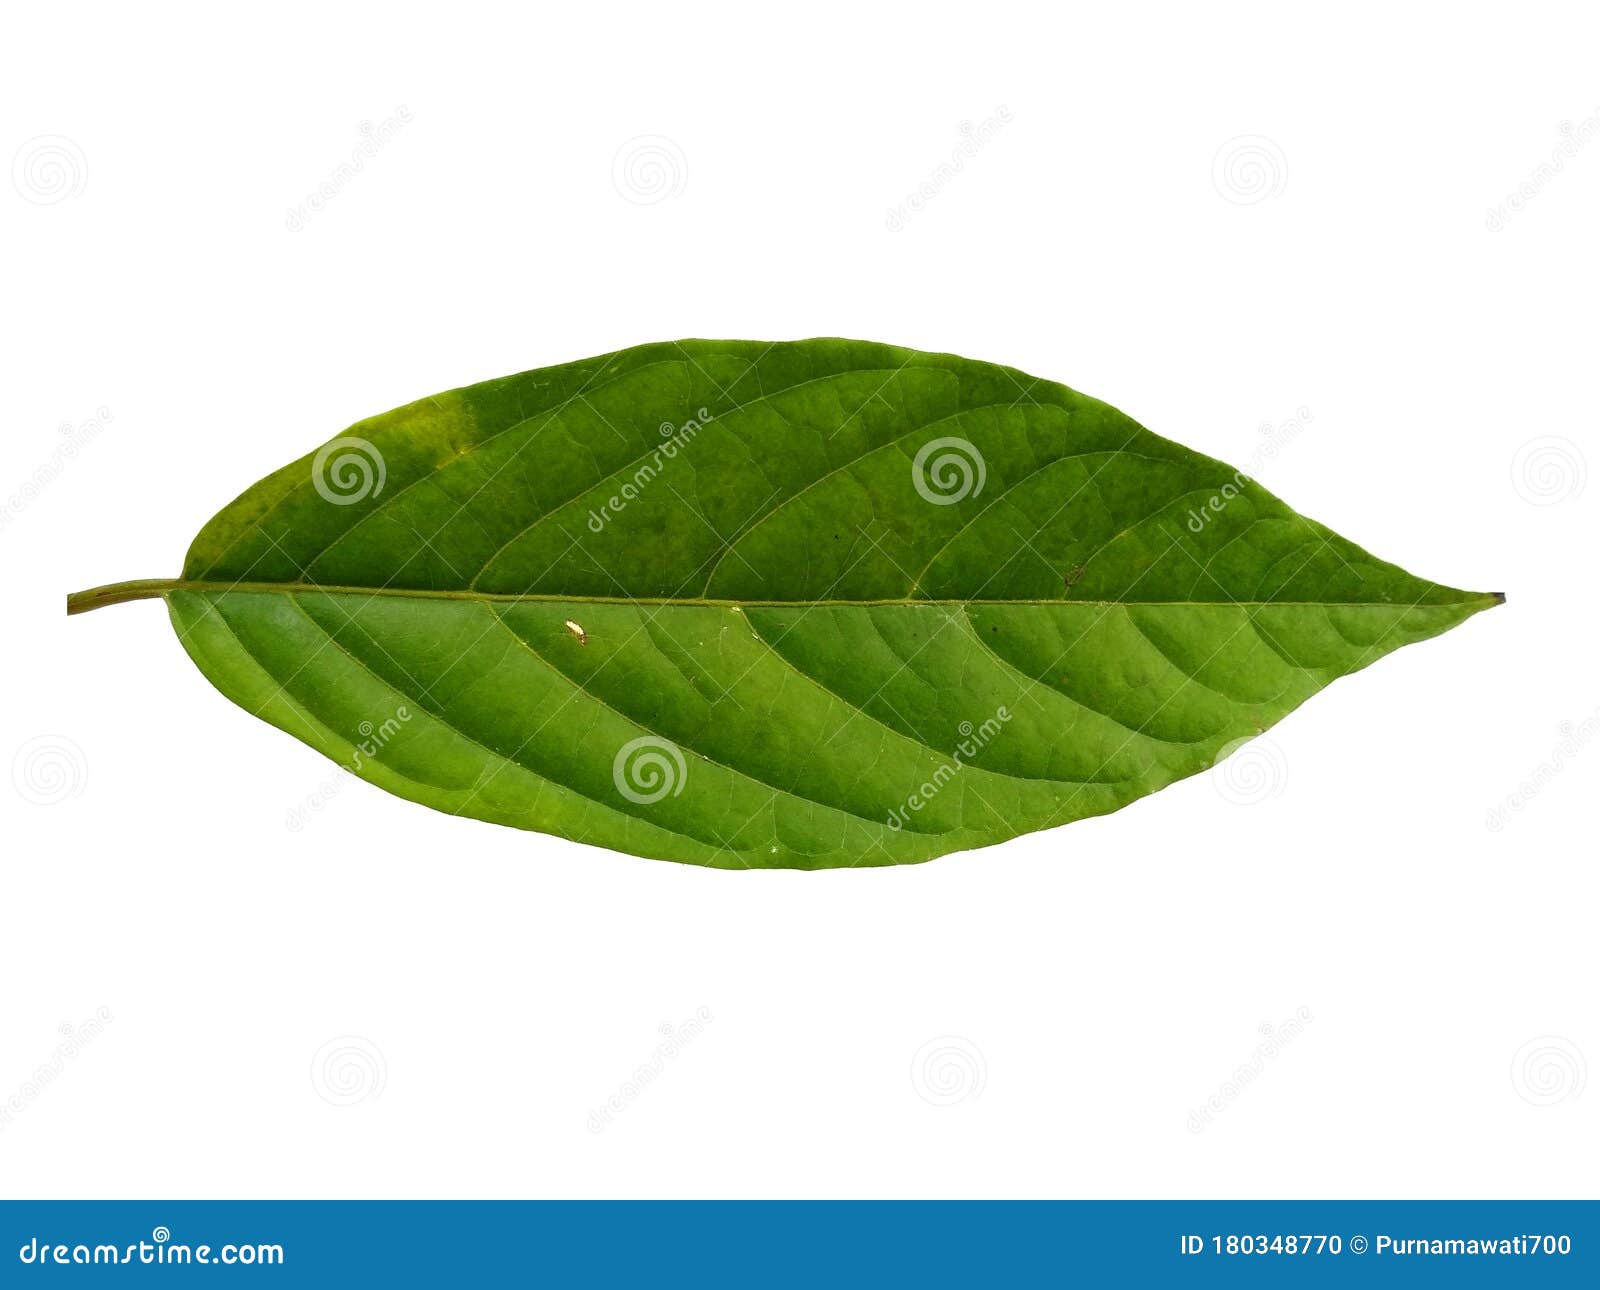 Cananga Odorata Leaves or Plantae Leaf Isolated on White Background ...